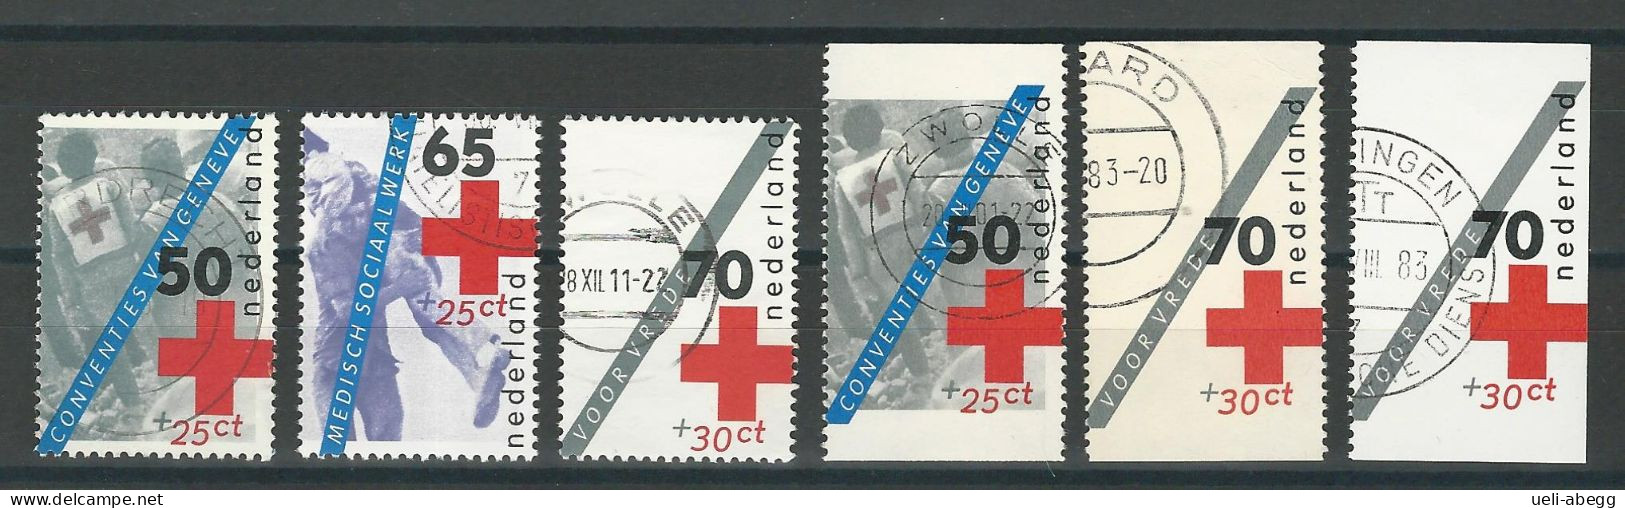 Niederlande NVPH 1289, 1291, 1292, 1293a-c , Mi 1236, 1238-39A/C O - Used Stamps